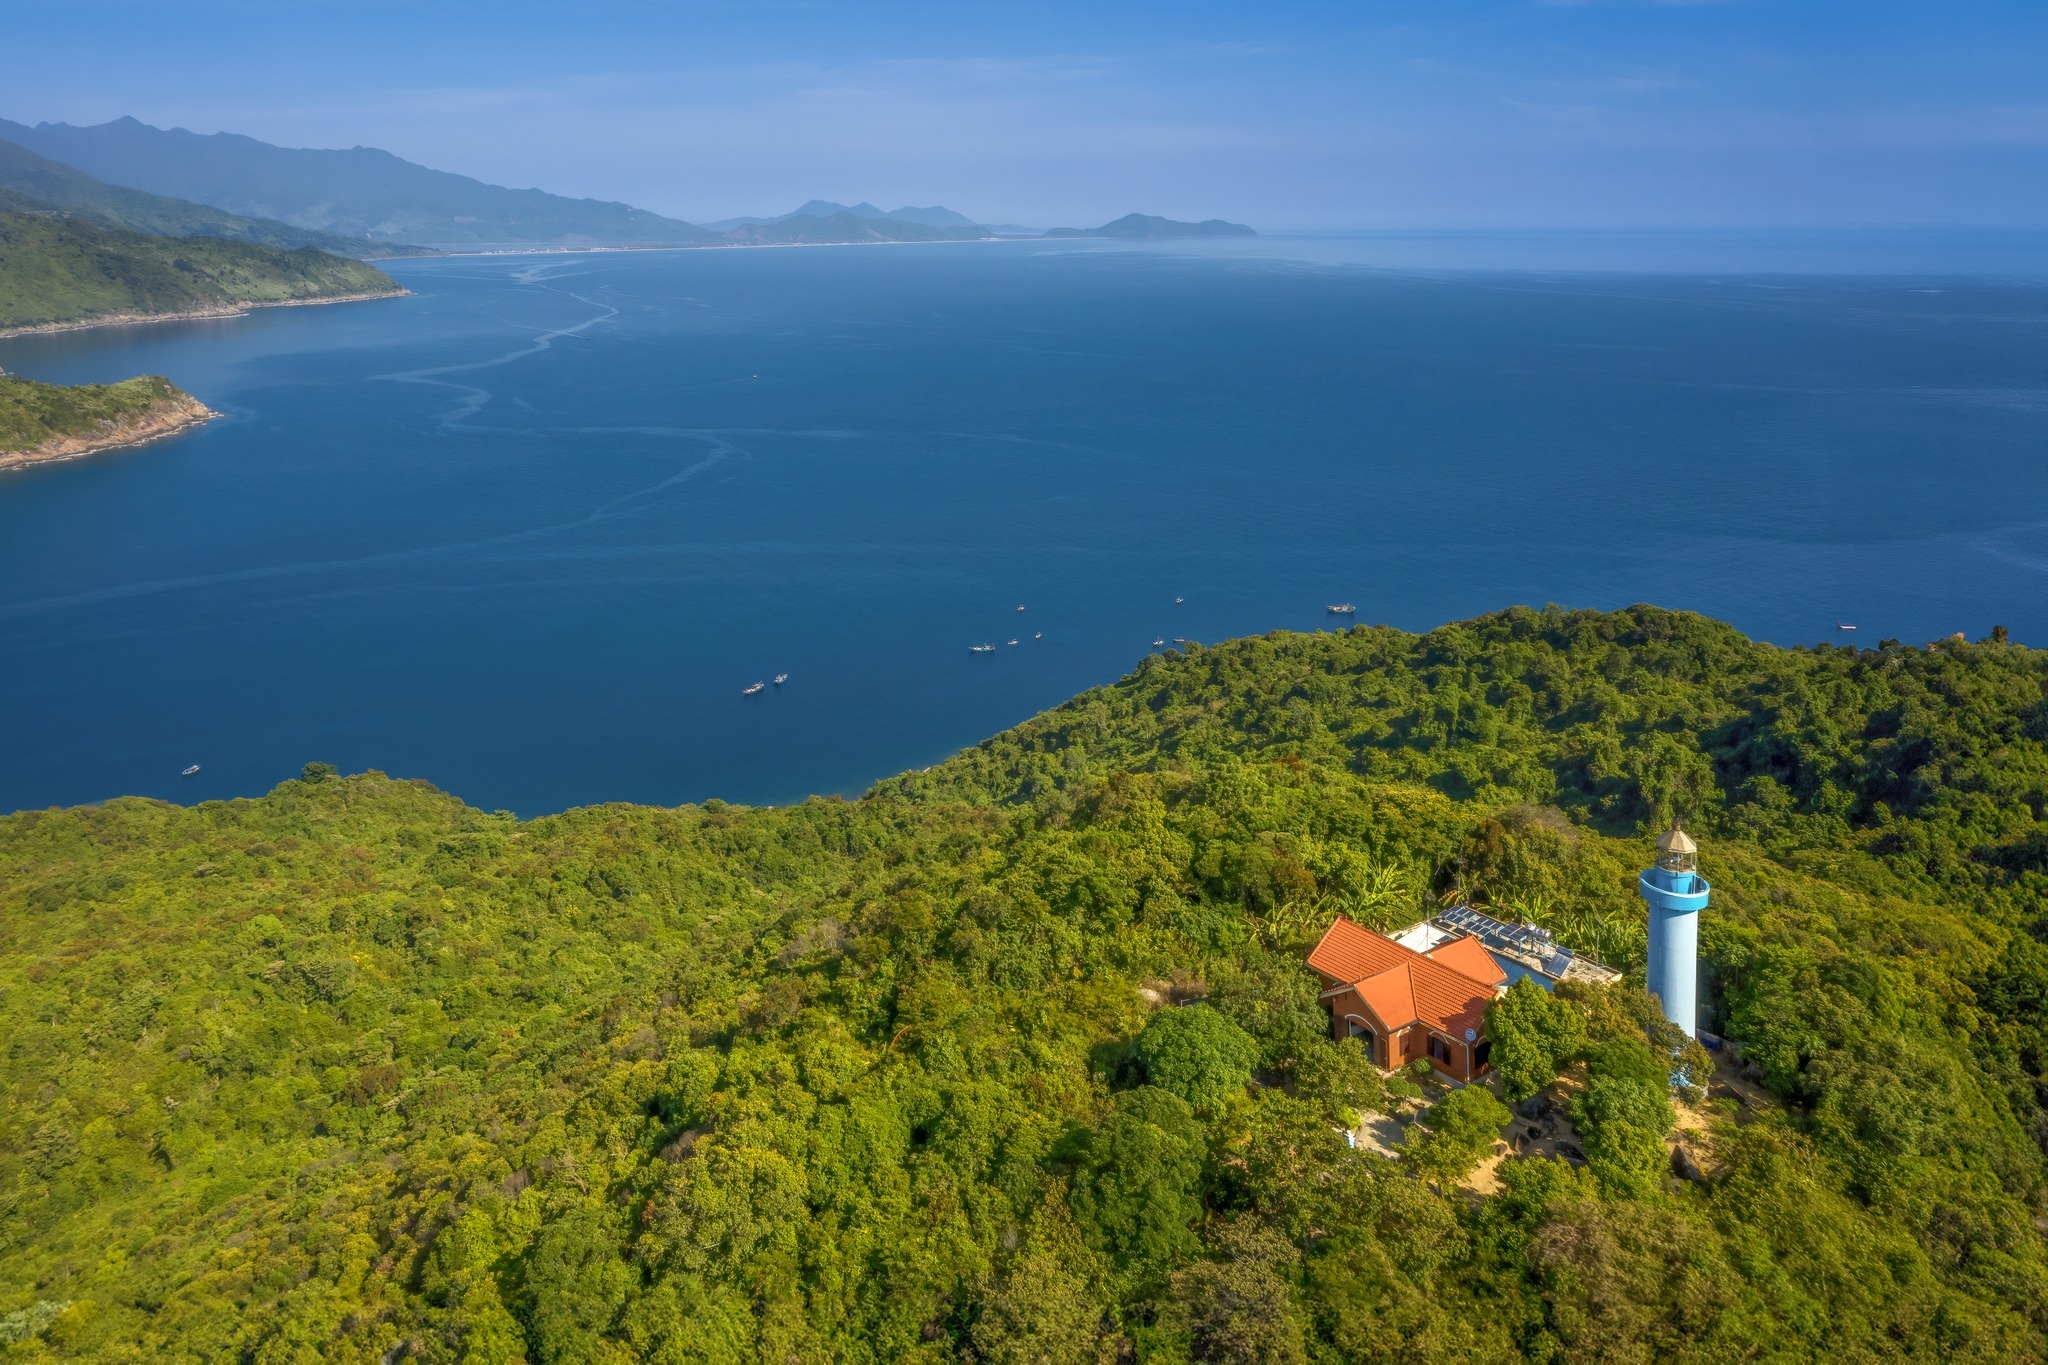 Trạm hải đăng trên đảo Ngọc (Sơn Chà) là ngọn đèn cho tàu thuyền qua lại vùng biển Hải Vân